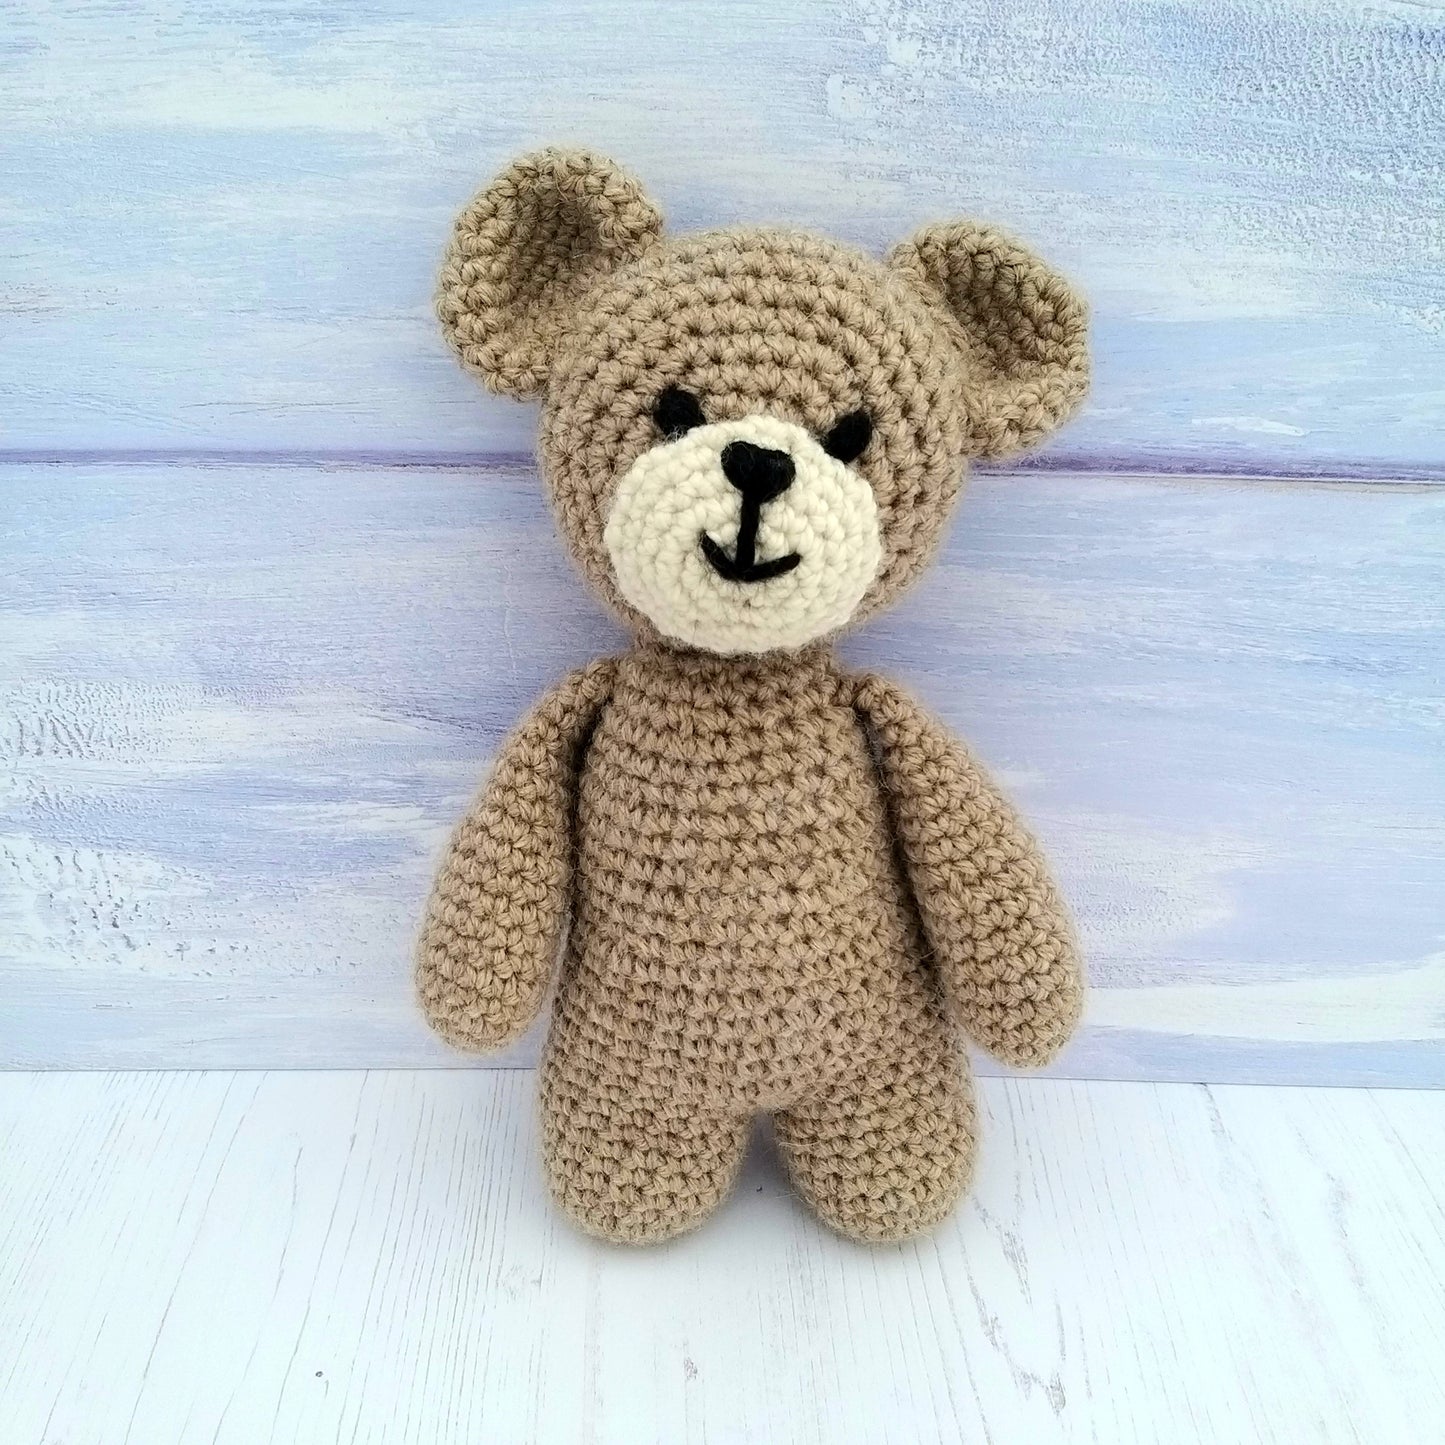 Teddy the Crochet Bear Toy